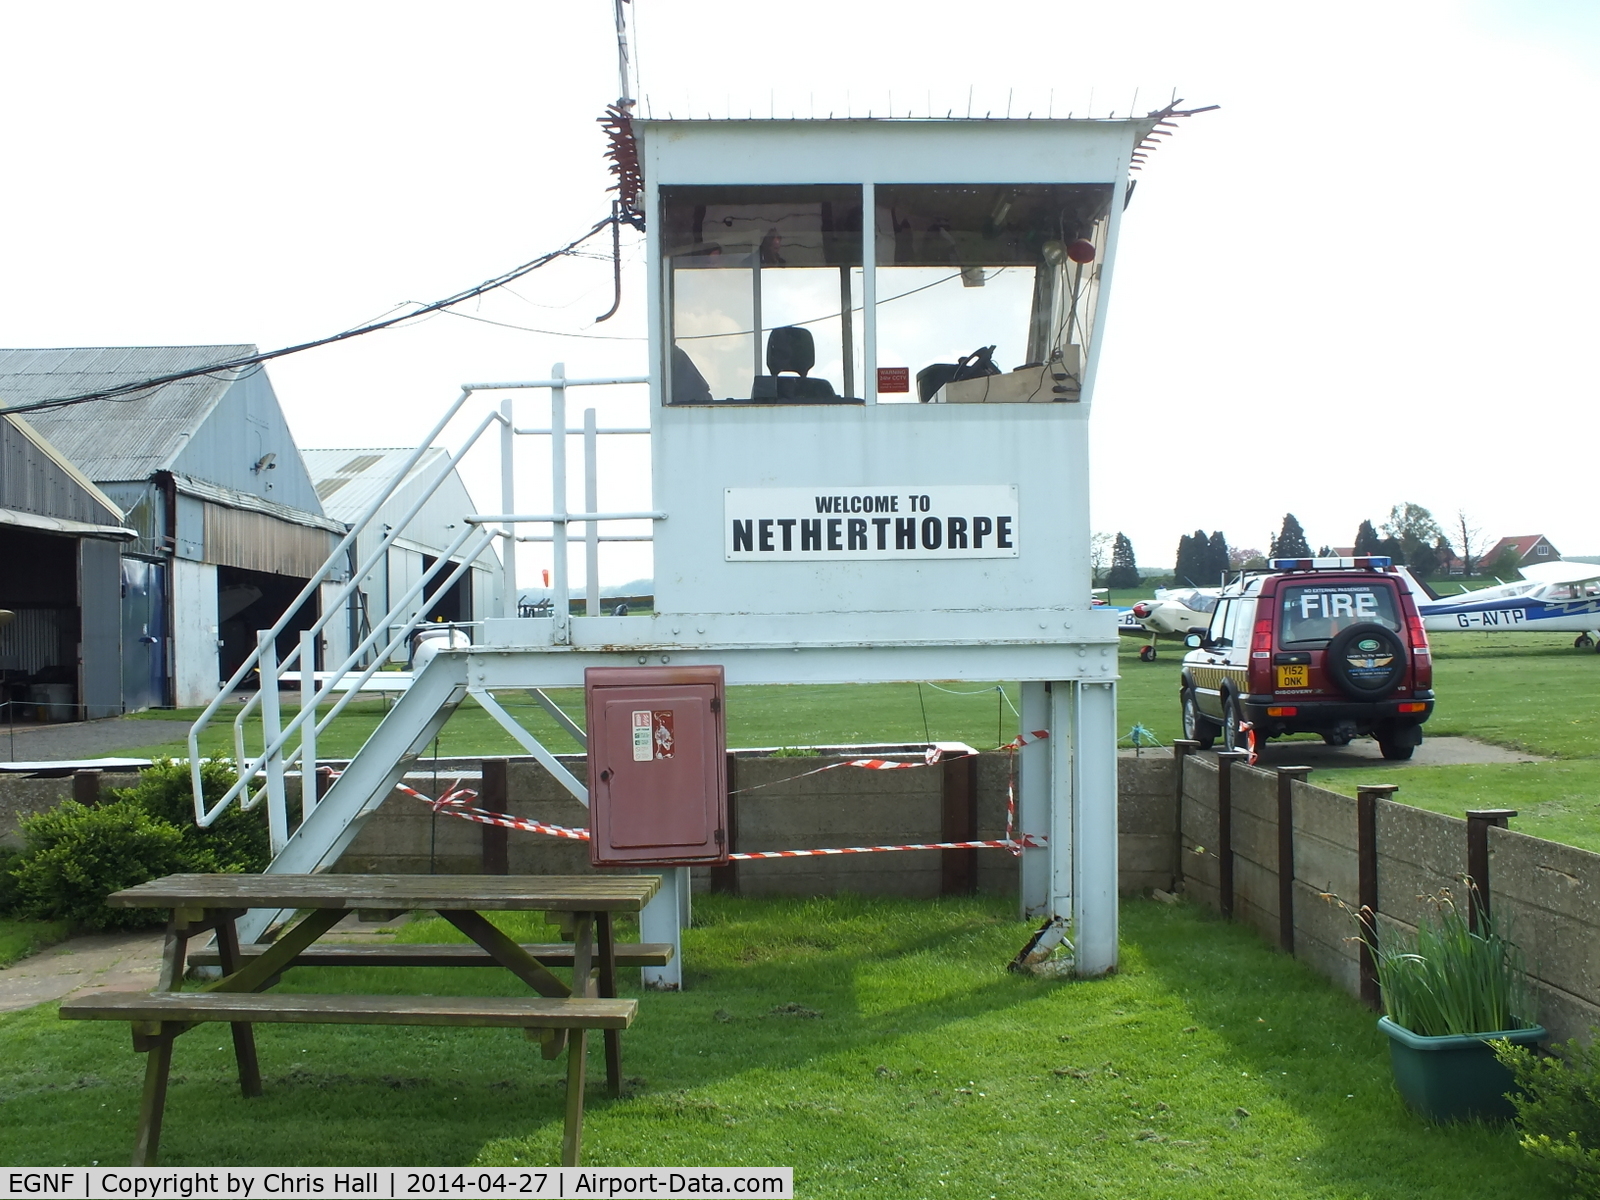 Netherthorpe Airfield Airport, Worksop, England United Kingdom (EGNF) - Netherthorpe Tower